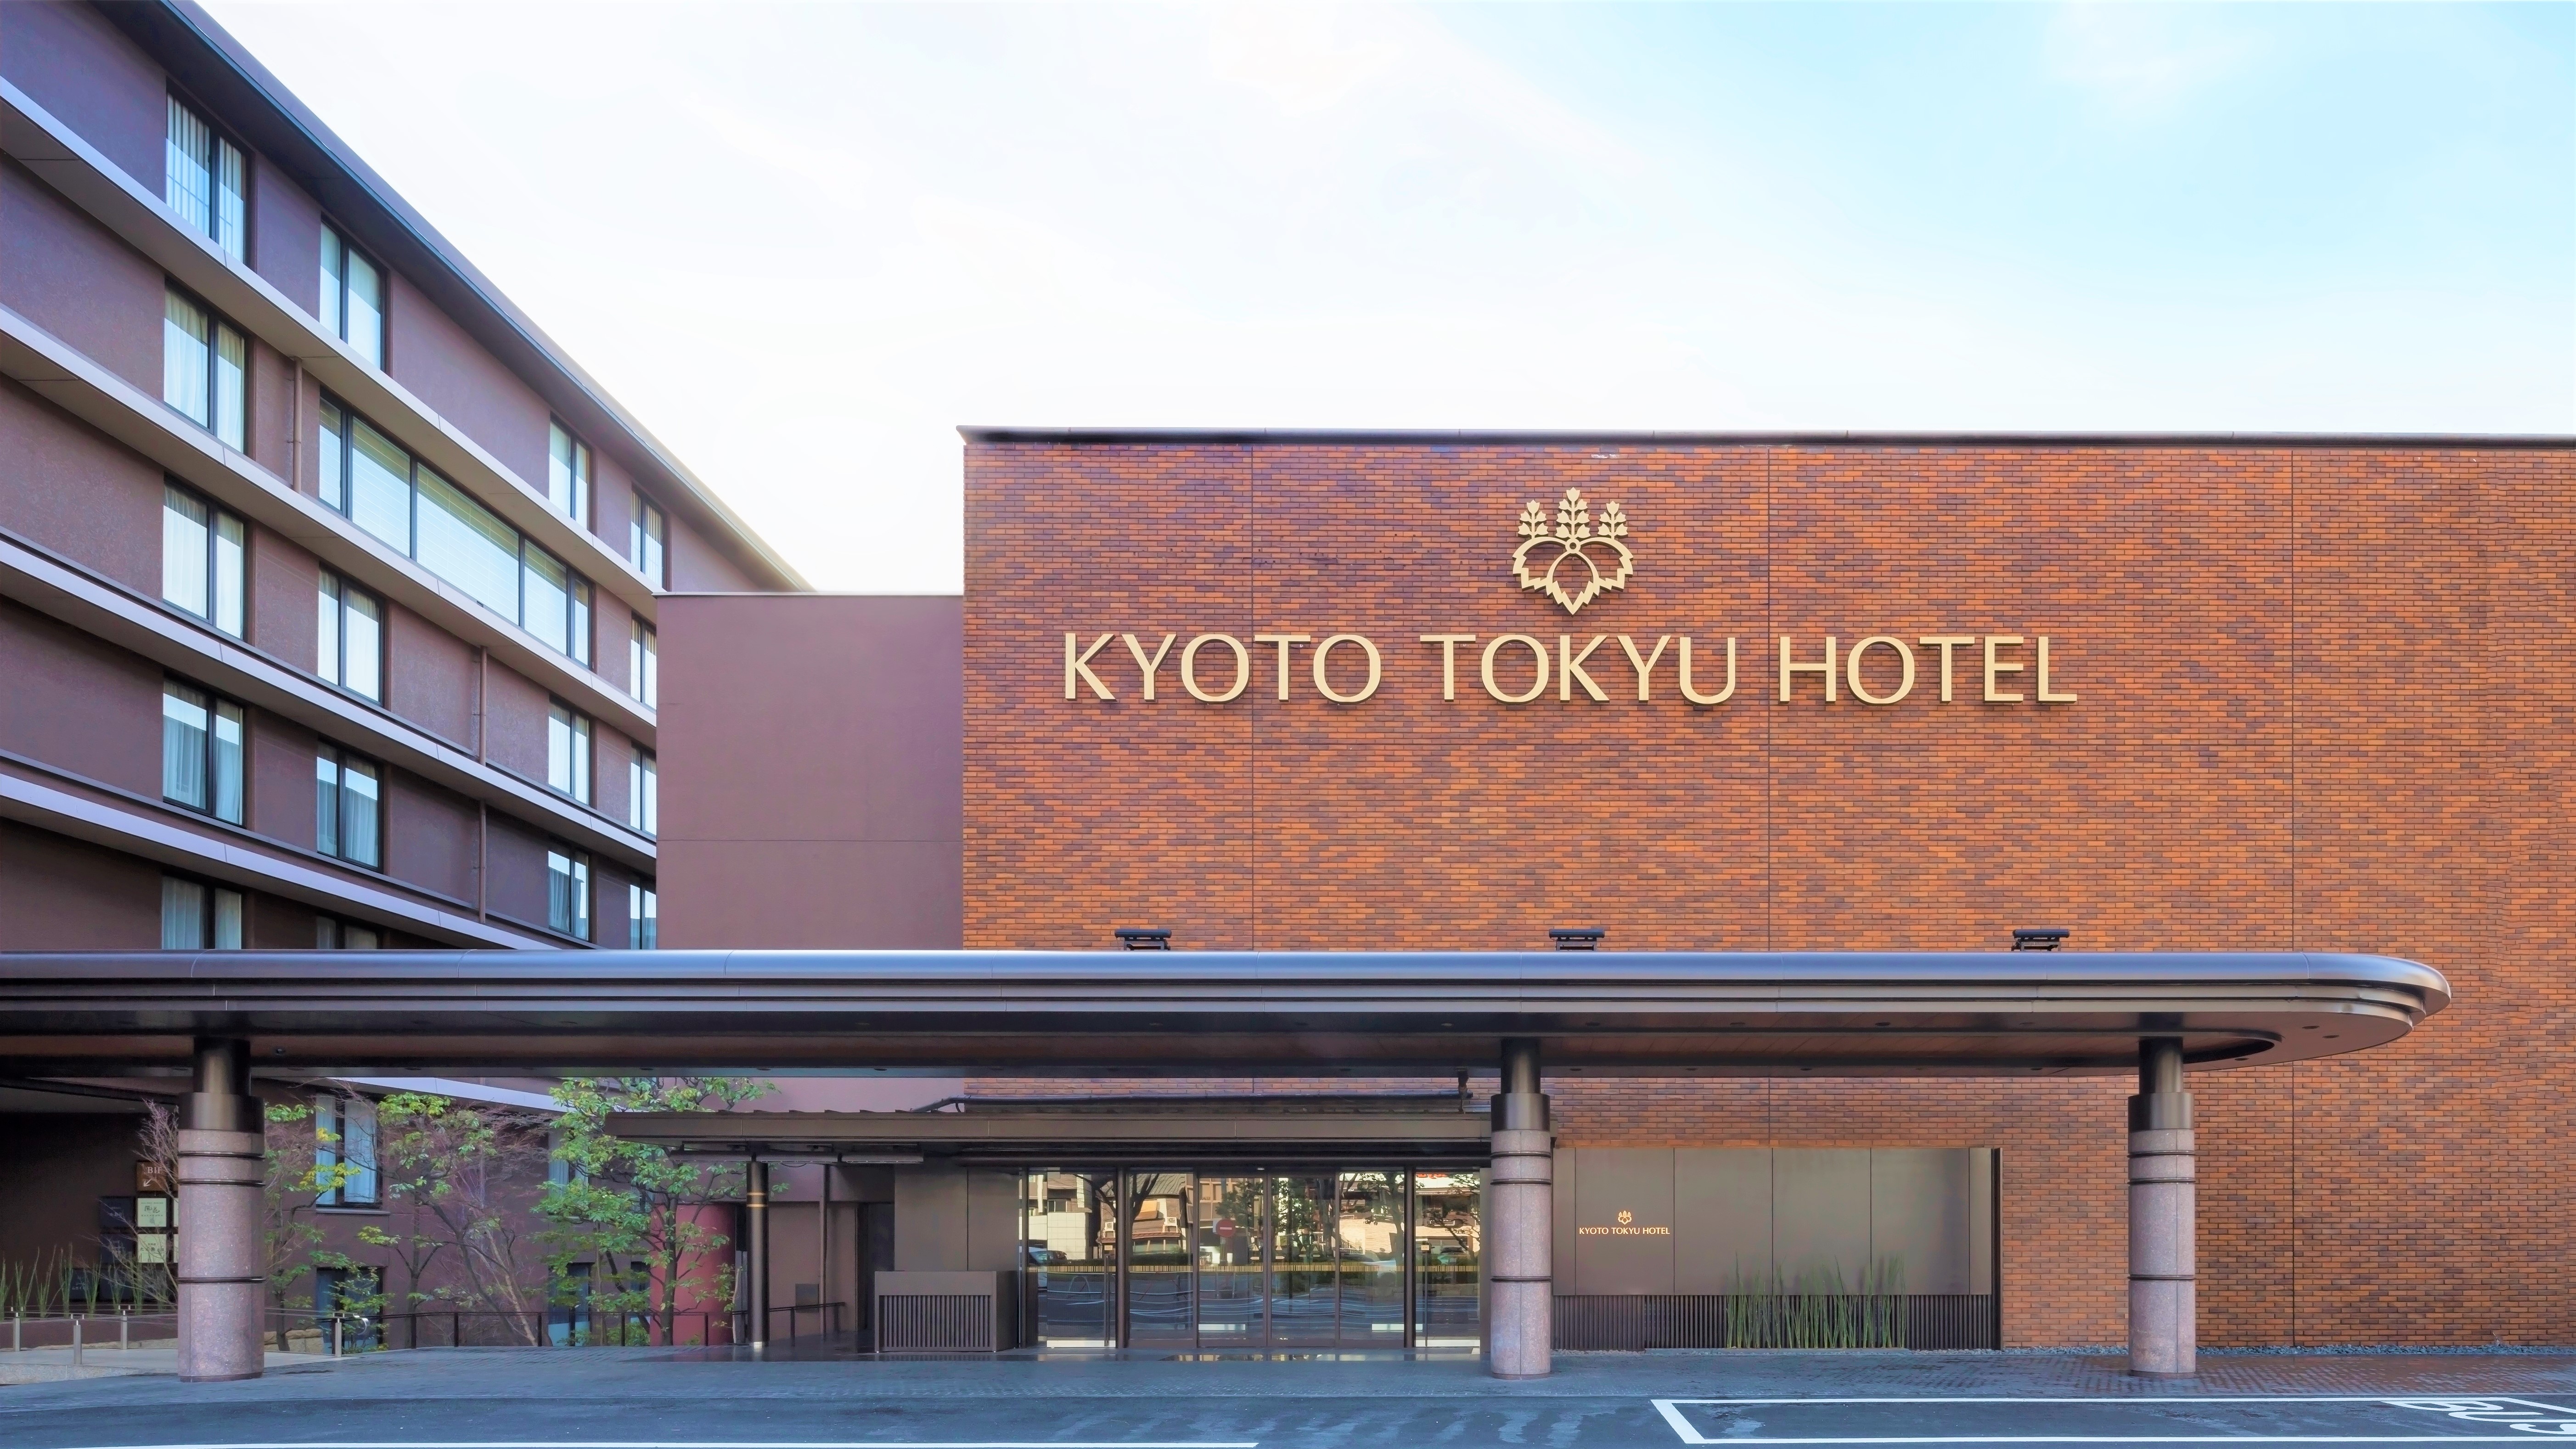 京都东急酒店